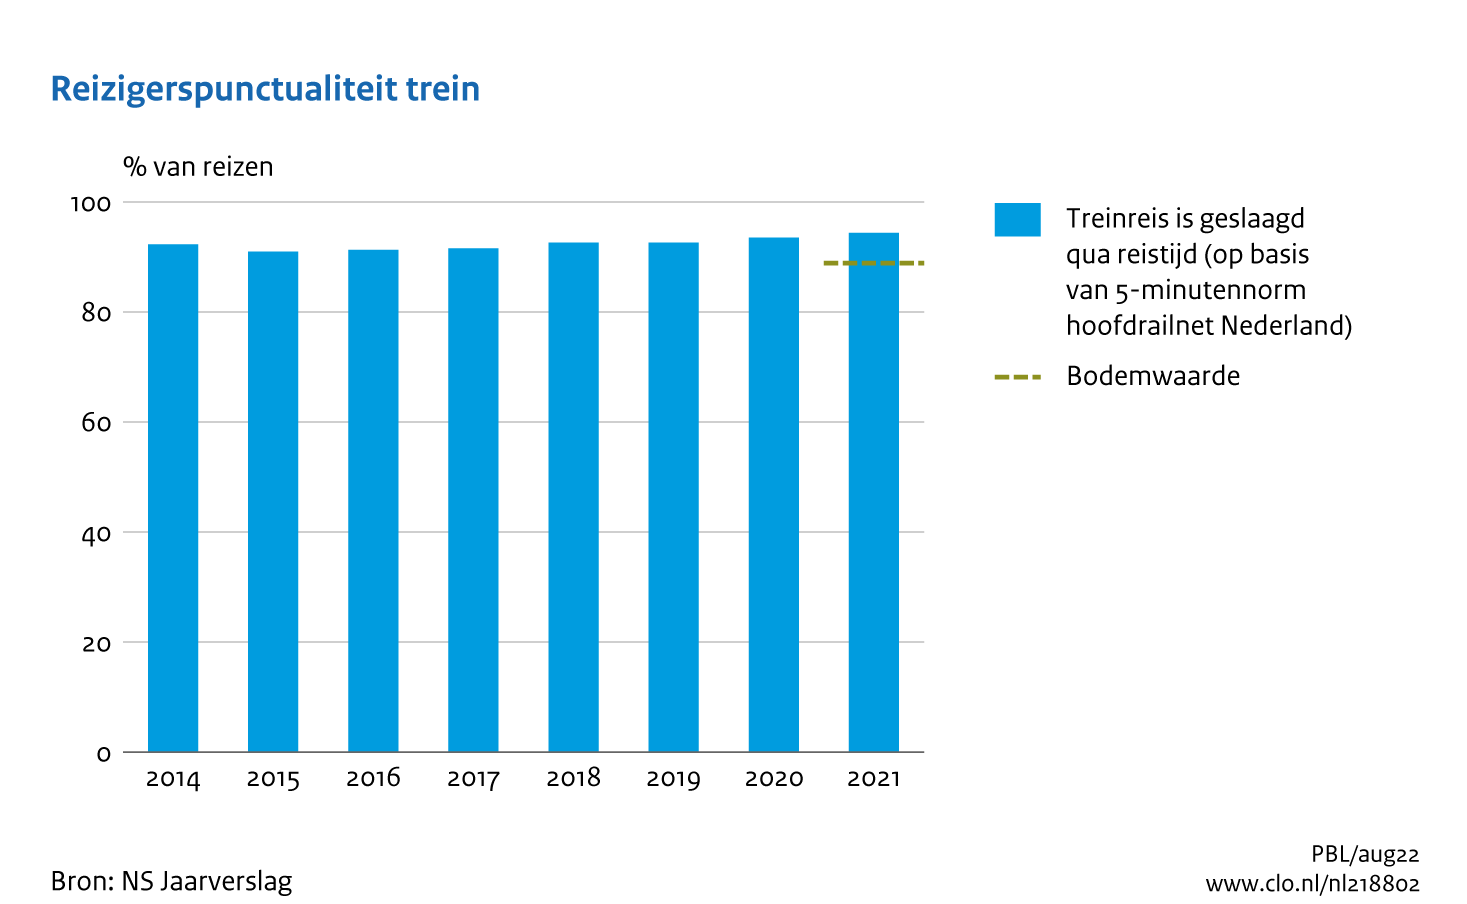 Figuur Reizigerspunctualiteit trein, 2014 - 2021. In de rest van de tekst wordt deze figuur uitgebreider uitgelegd.